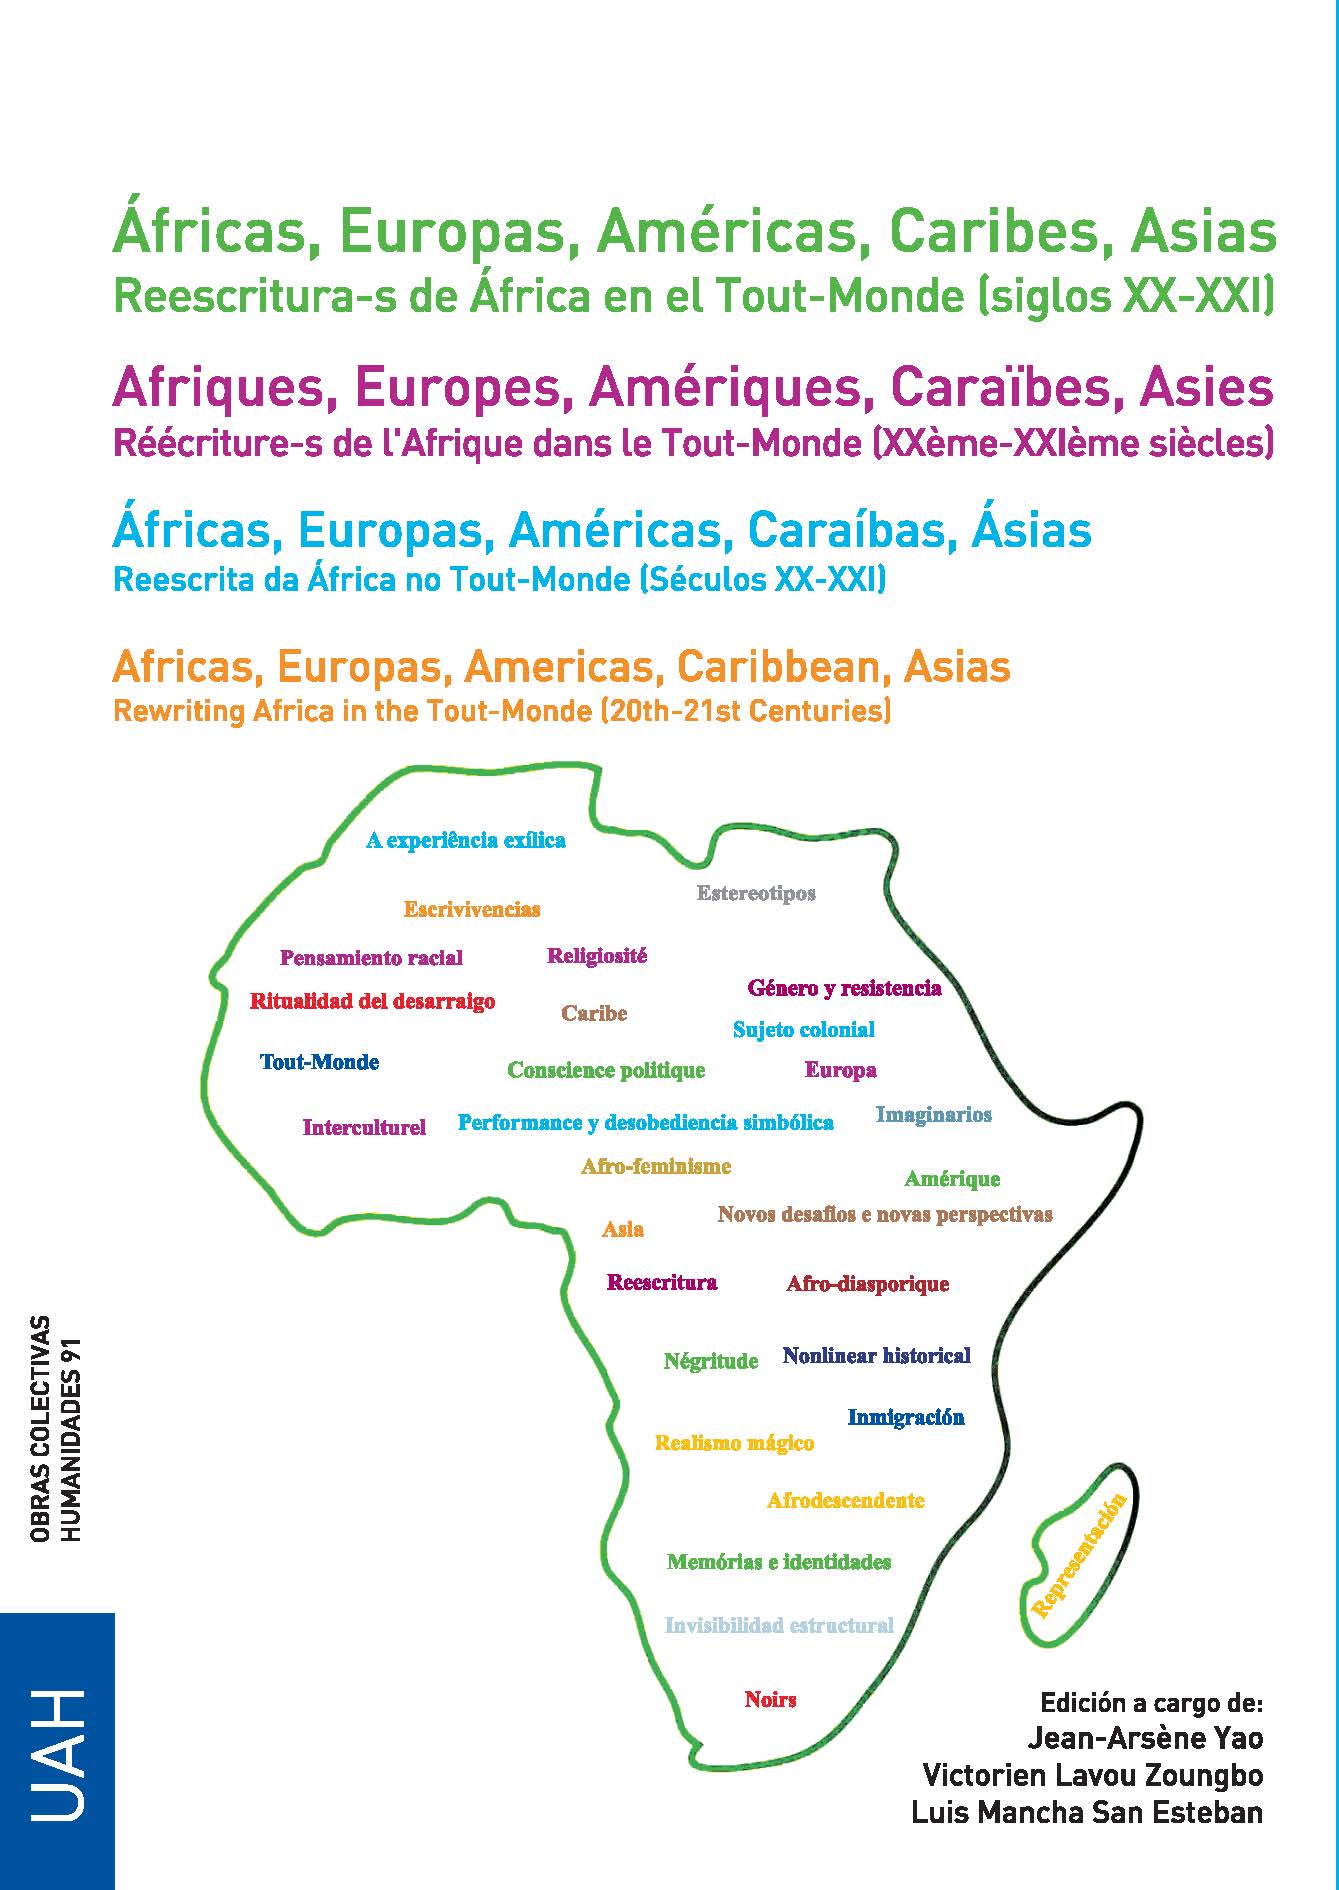 ÁFRICAS, EUROPAS, AMÉRICAS, CARIBES, ASIAS. REESCRITURA-S DE ÁFRICA EN EL TOUT-MONDE (SIGLOS XX-XXI)